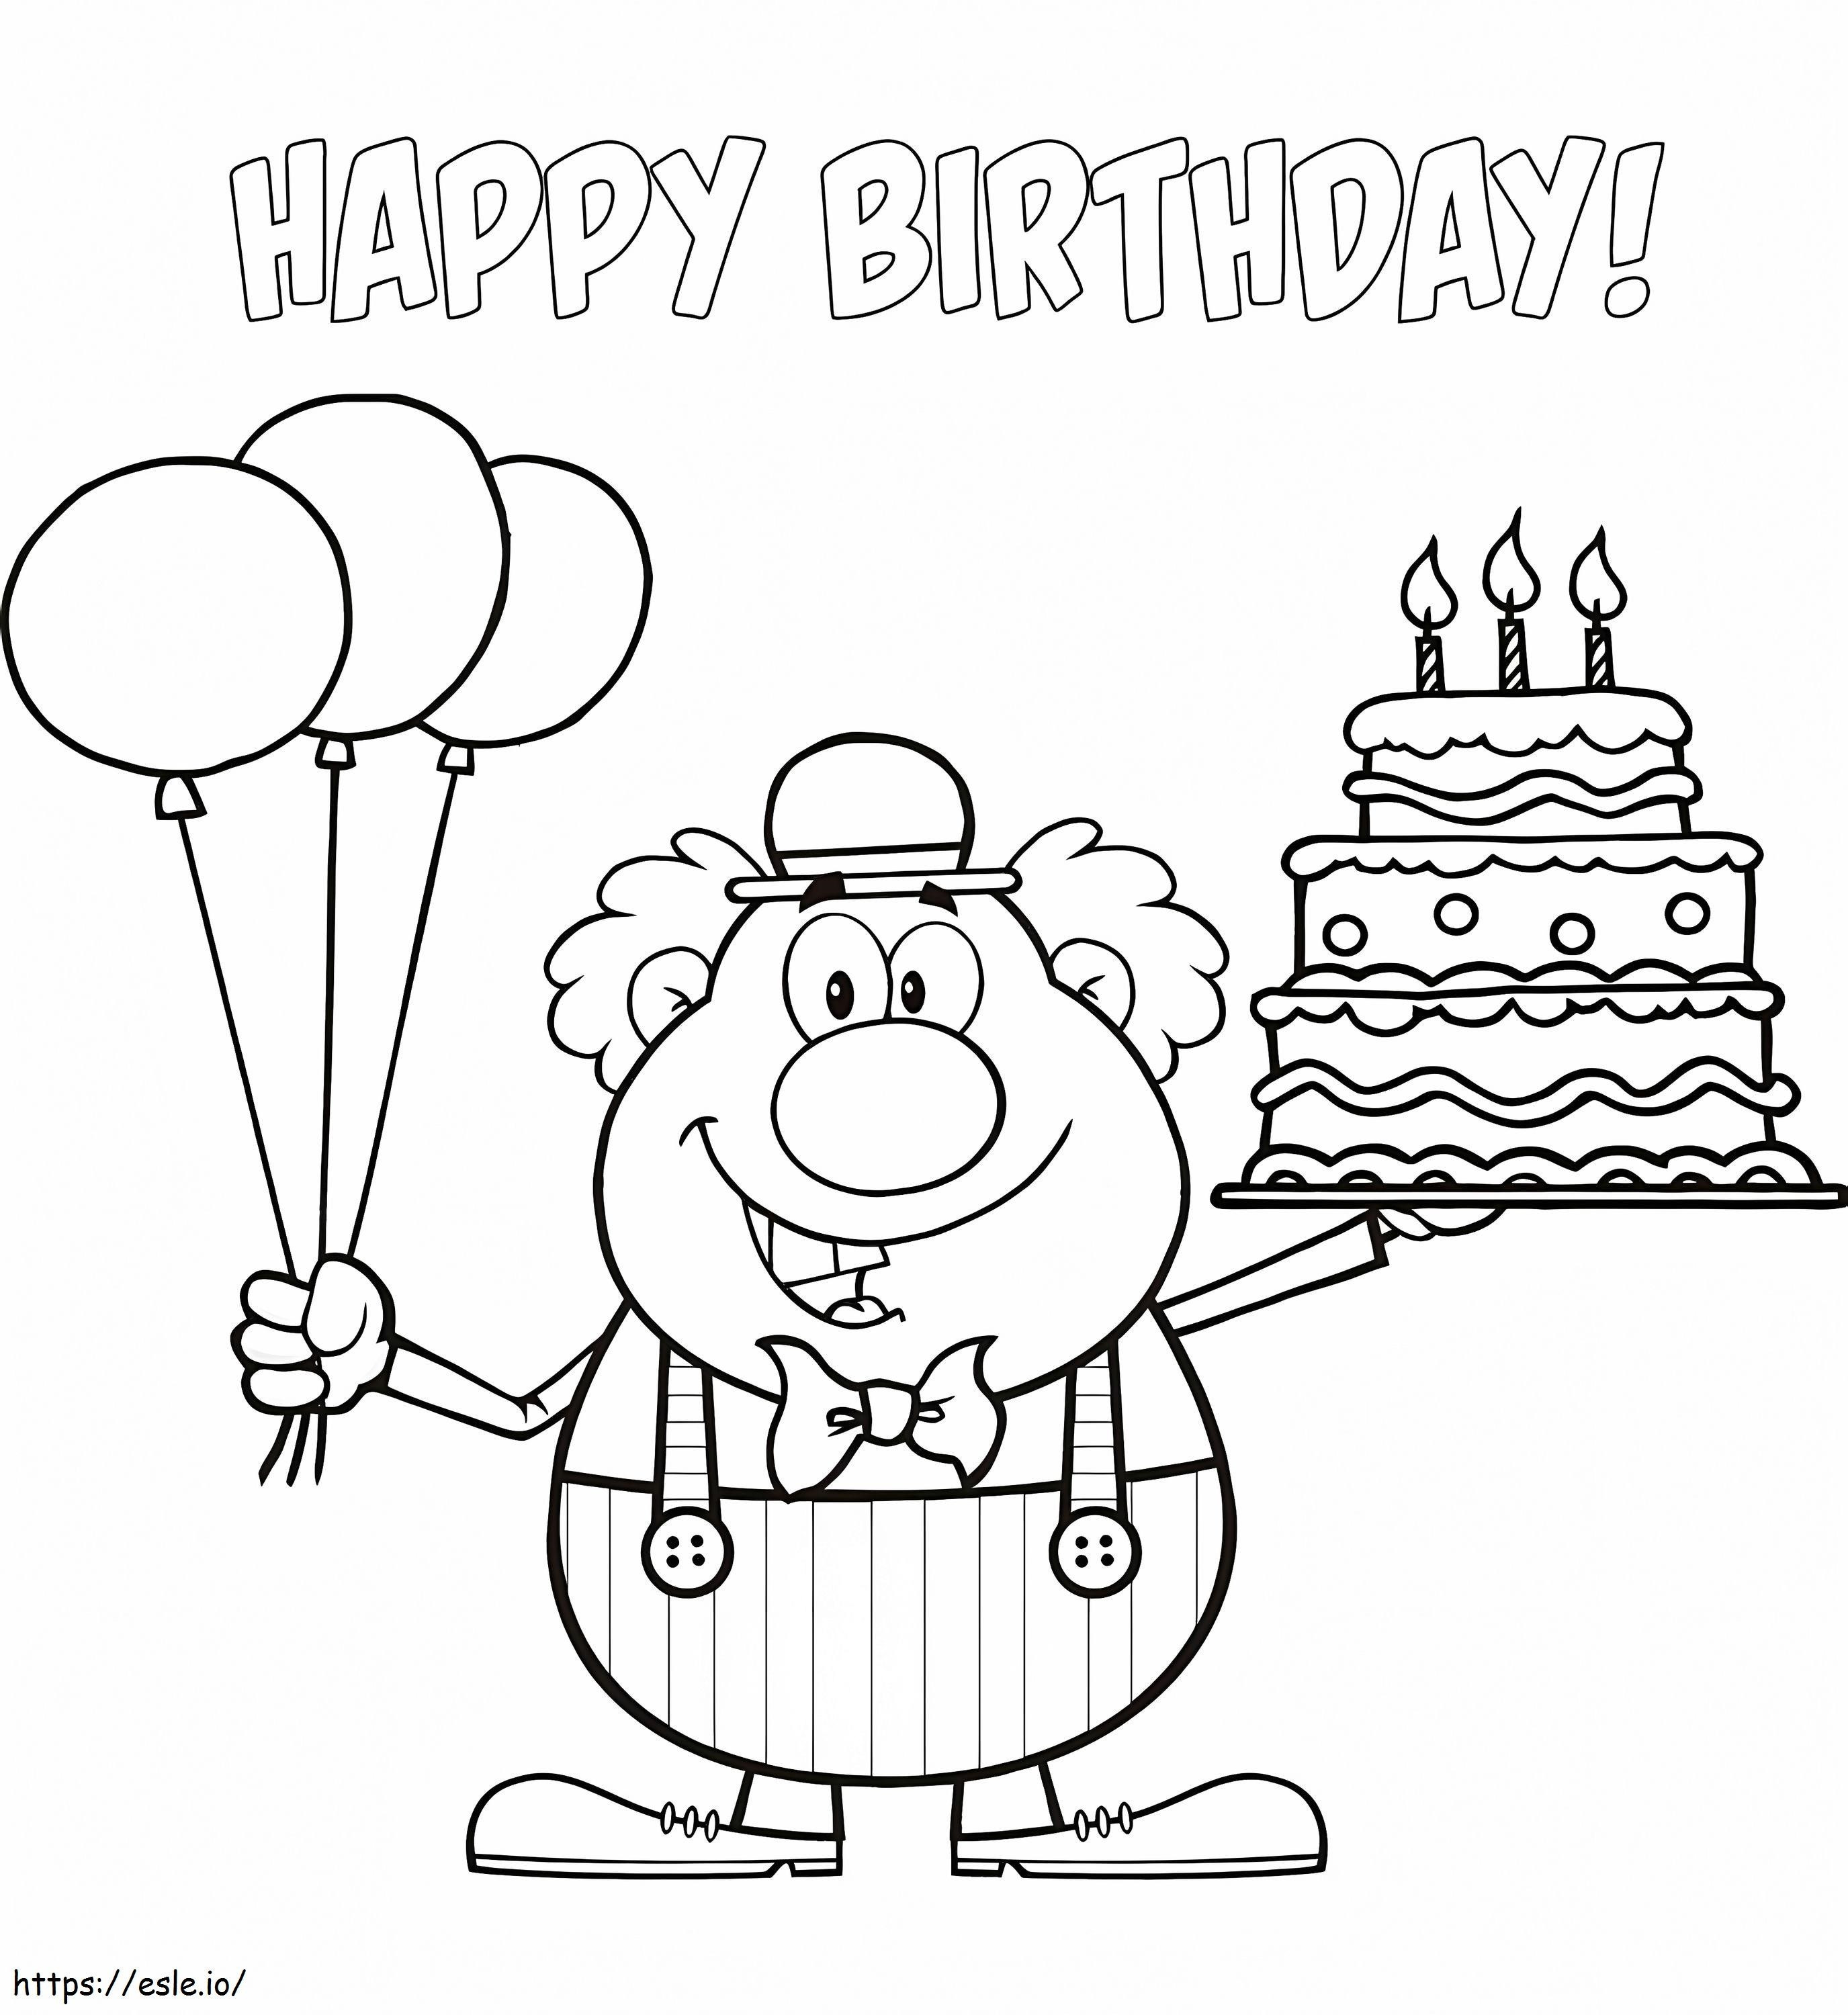 1585966527 Alles Gute zum Geburtstag-Clown mit Luftballons und Kuchen ausmalbilder